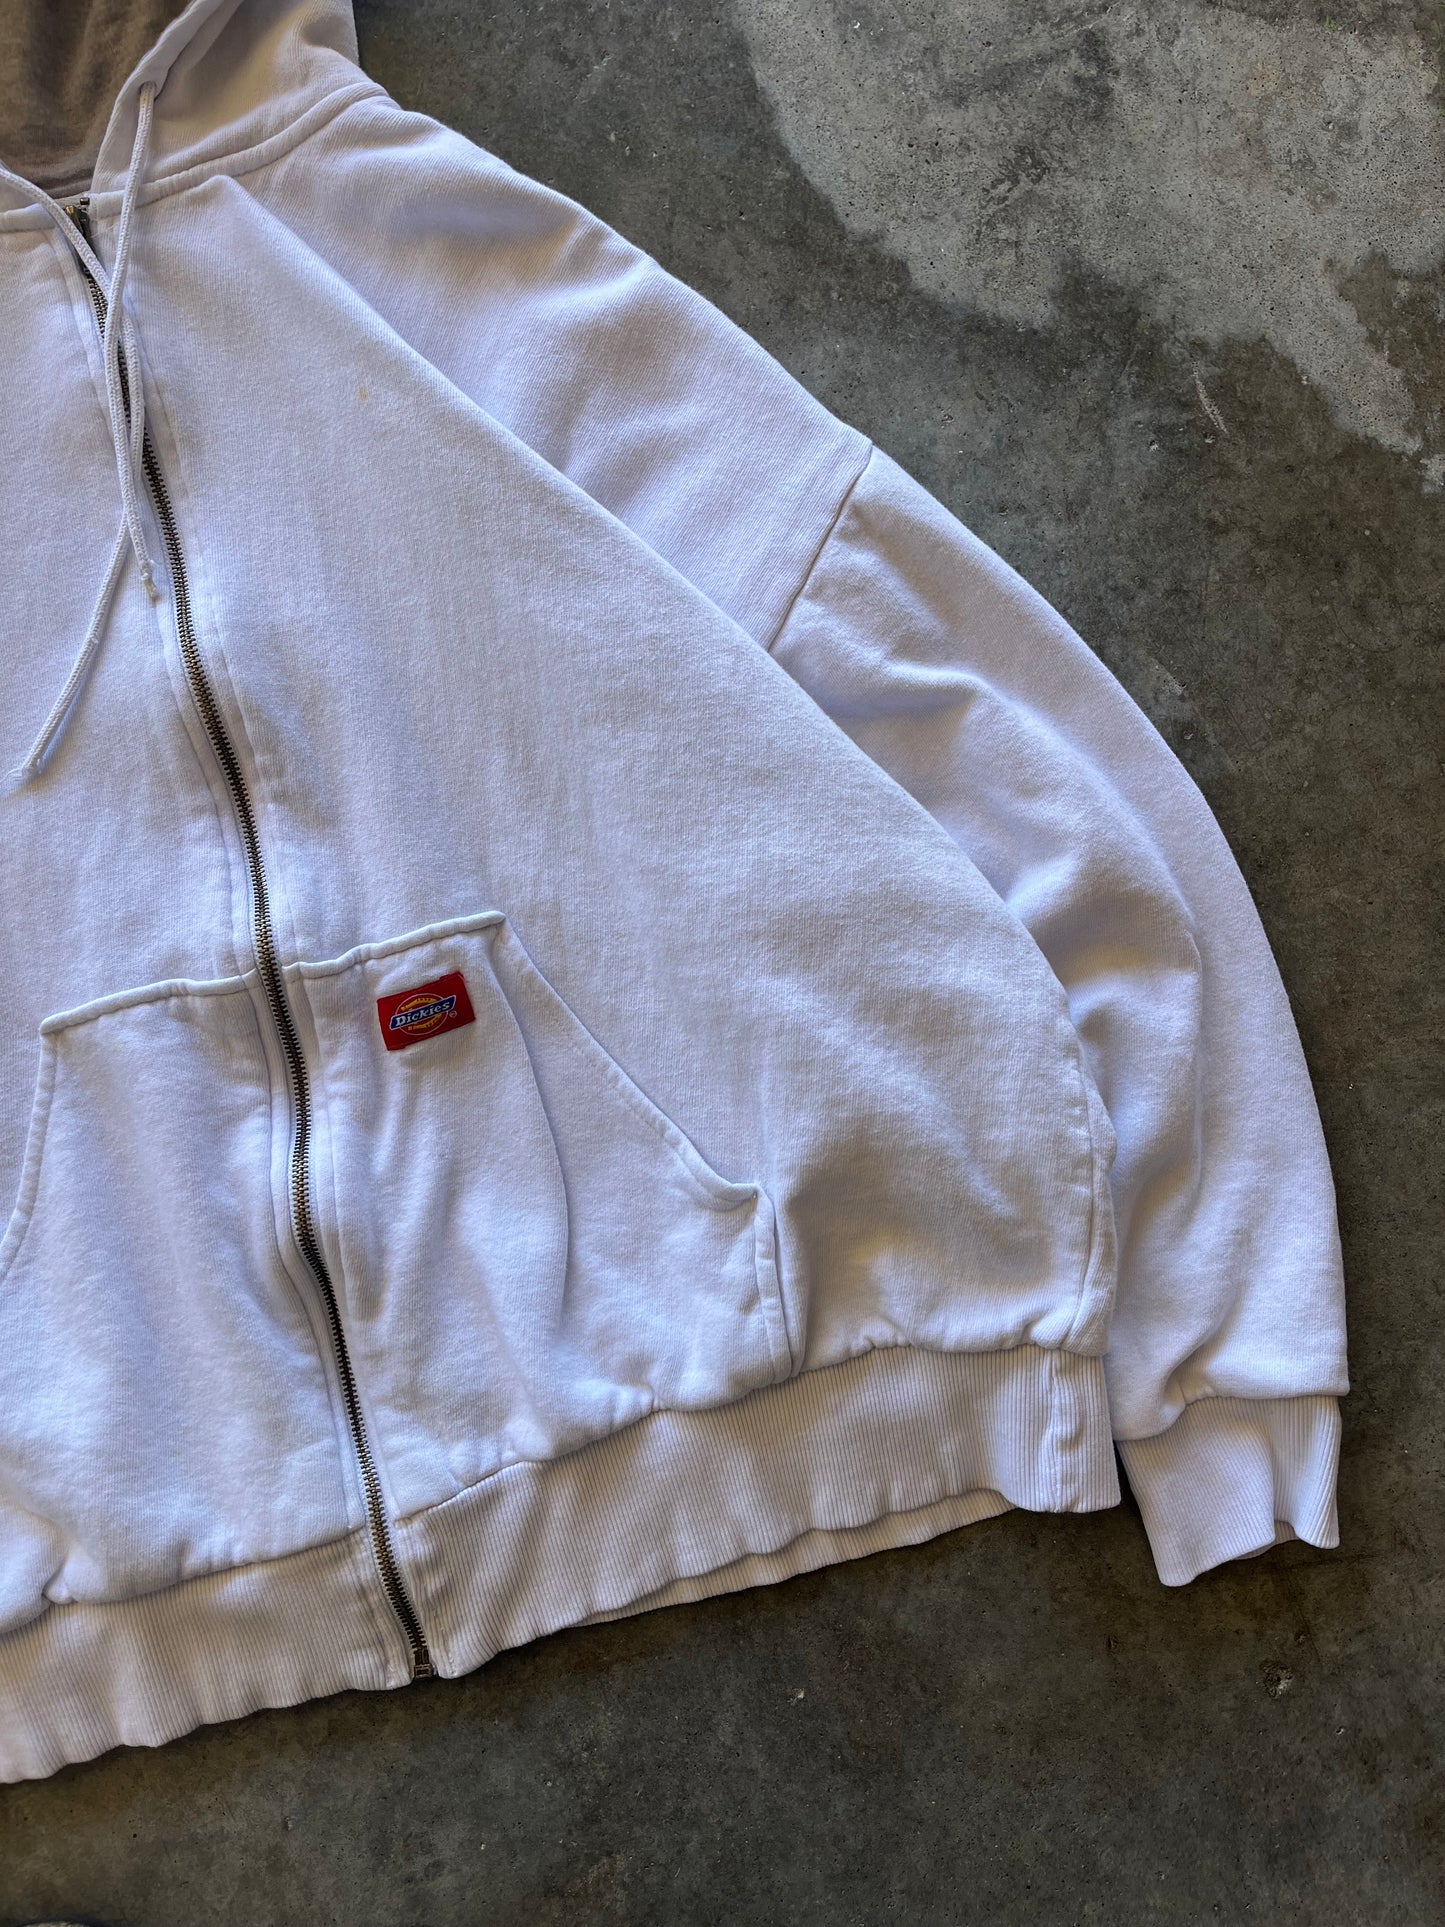 (XXL) Vintage Dickies Jacket